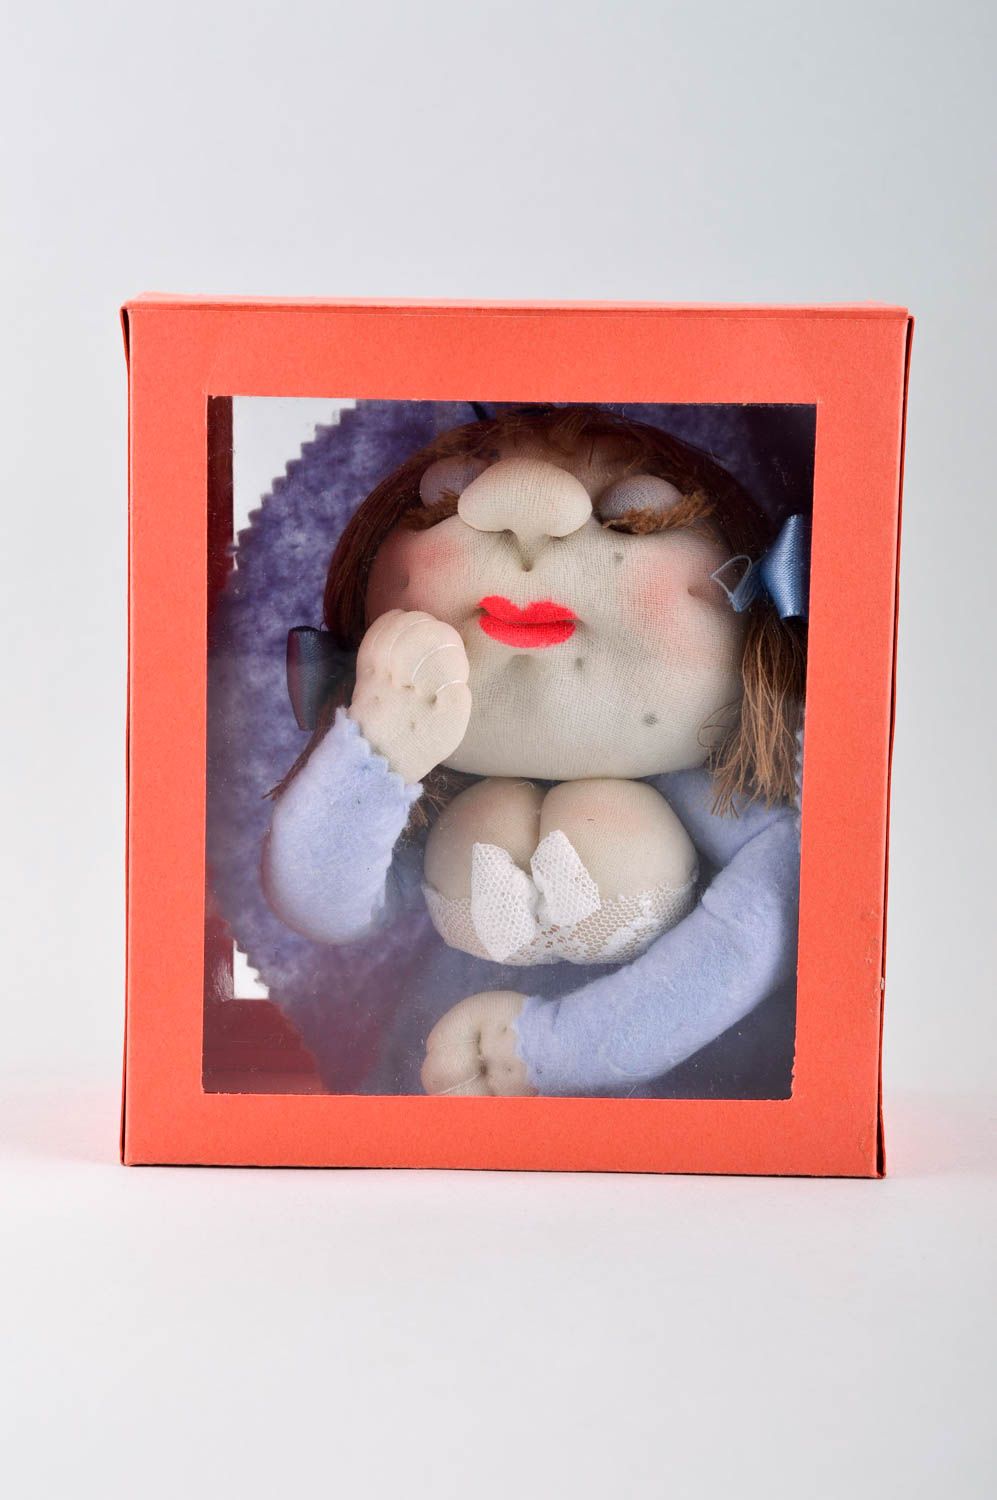 Puppe handgemacht Stoff Puppe Kinder Spielzeug Geschenk Idee originell nett foto 3